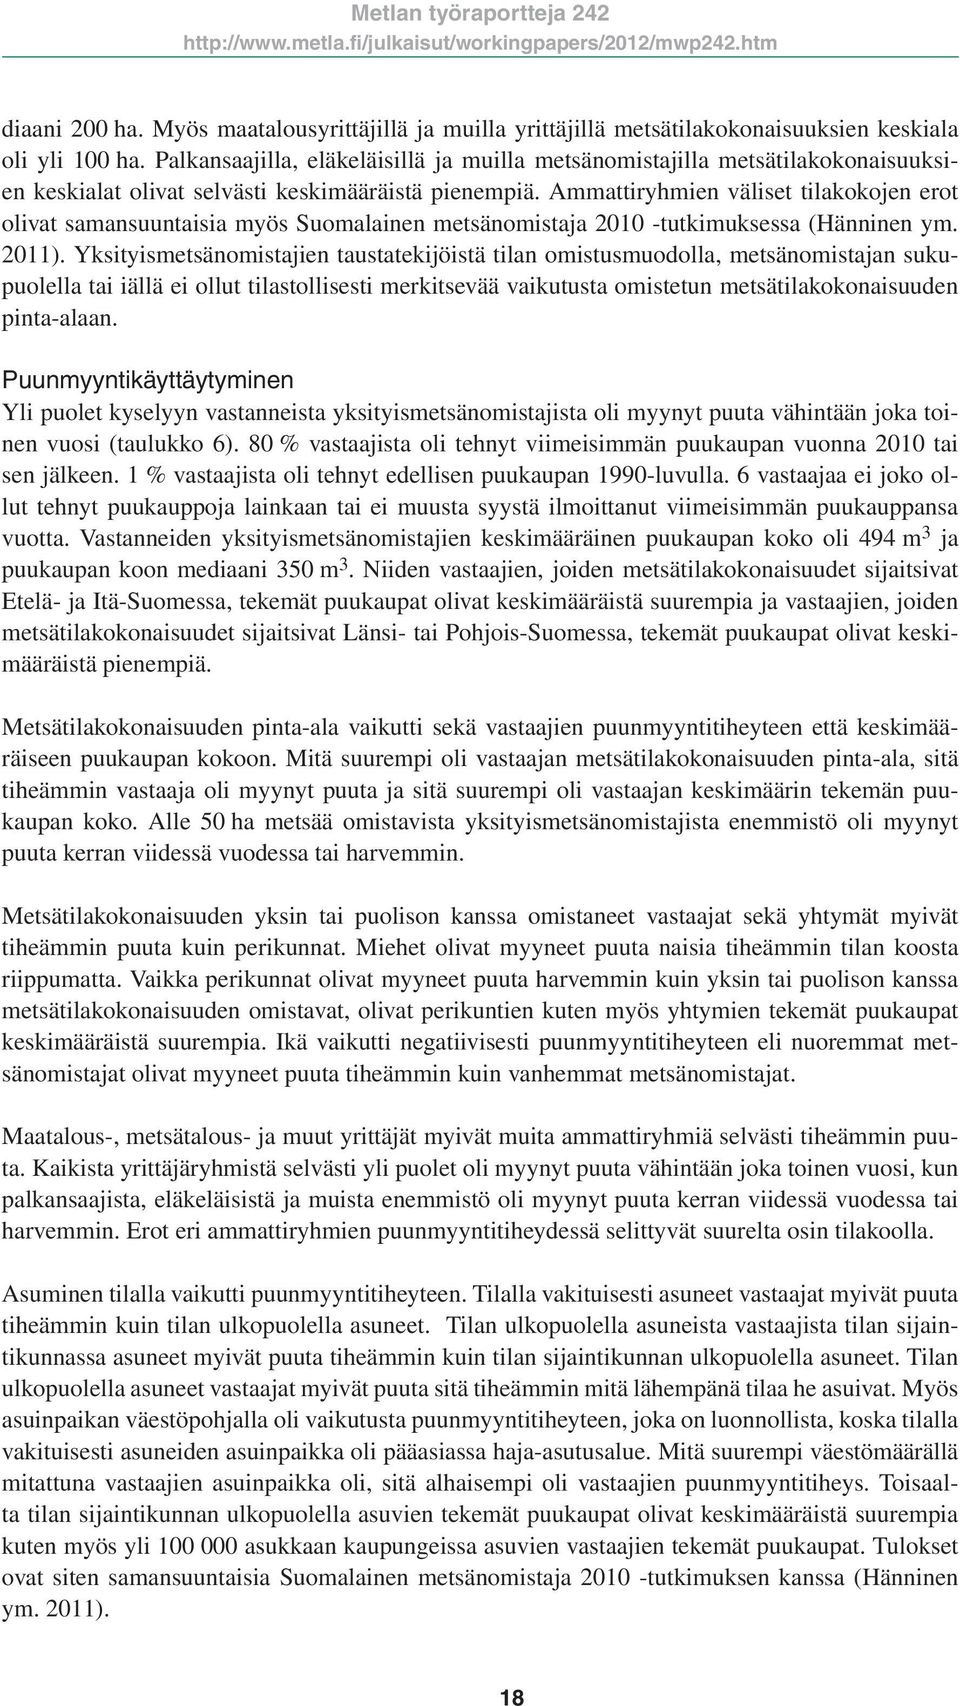 Ammattiryhmien väliset tilakokojen erot olivat samansuuntaisia myös Suomalainen metsänomistaja 2010 -tutkimuksessa (Hänninen ym. 2011).